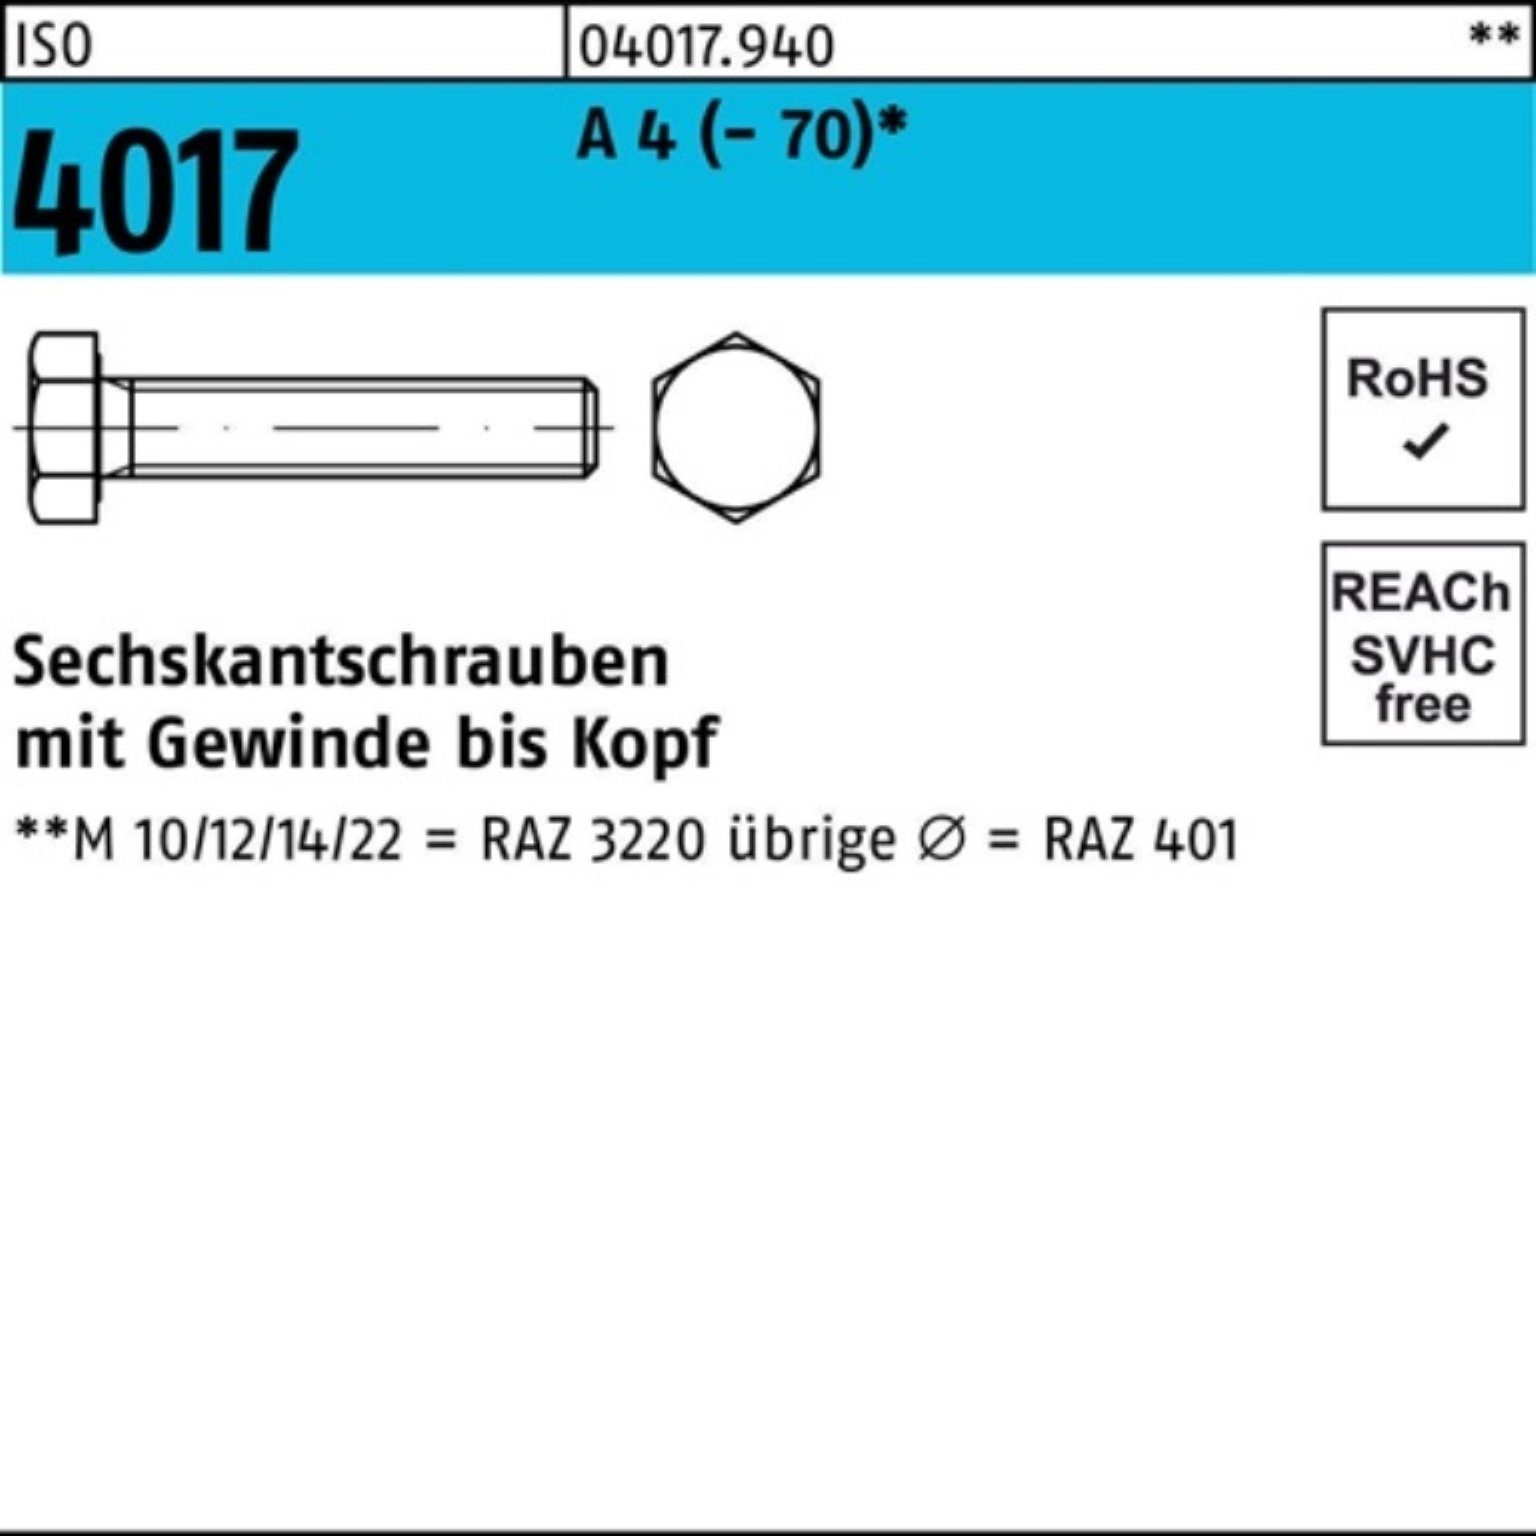 Bufab Sechskantschraube 100er Pack Sechskantschraube ISO 4017 VG M18x 40 A 4 (70) 1 Stück I